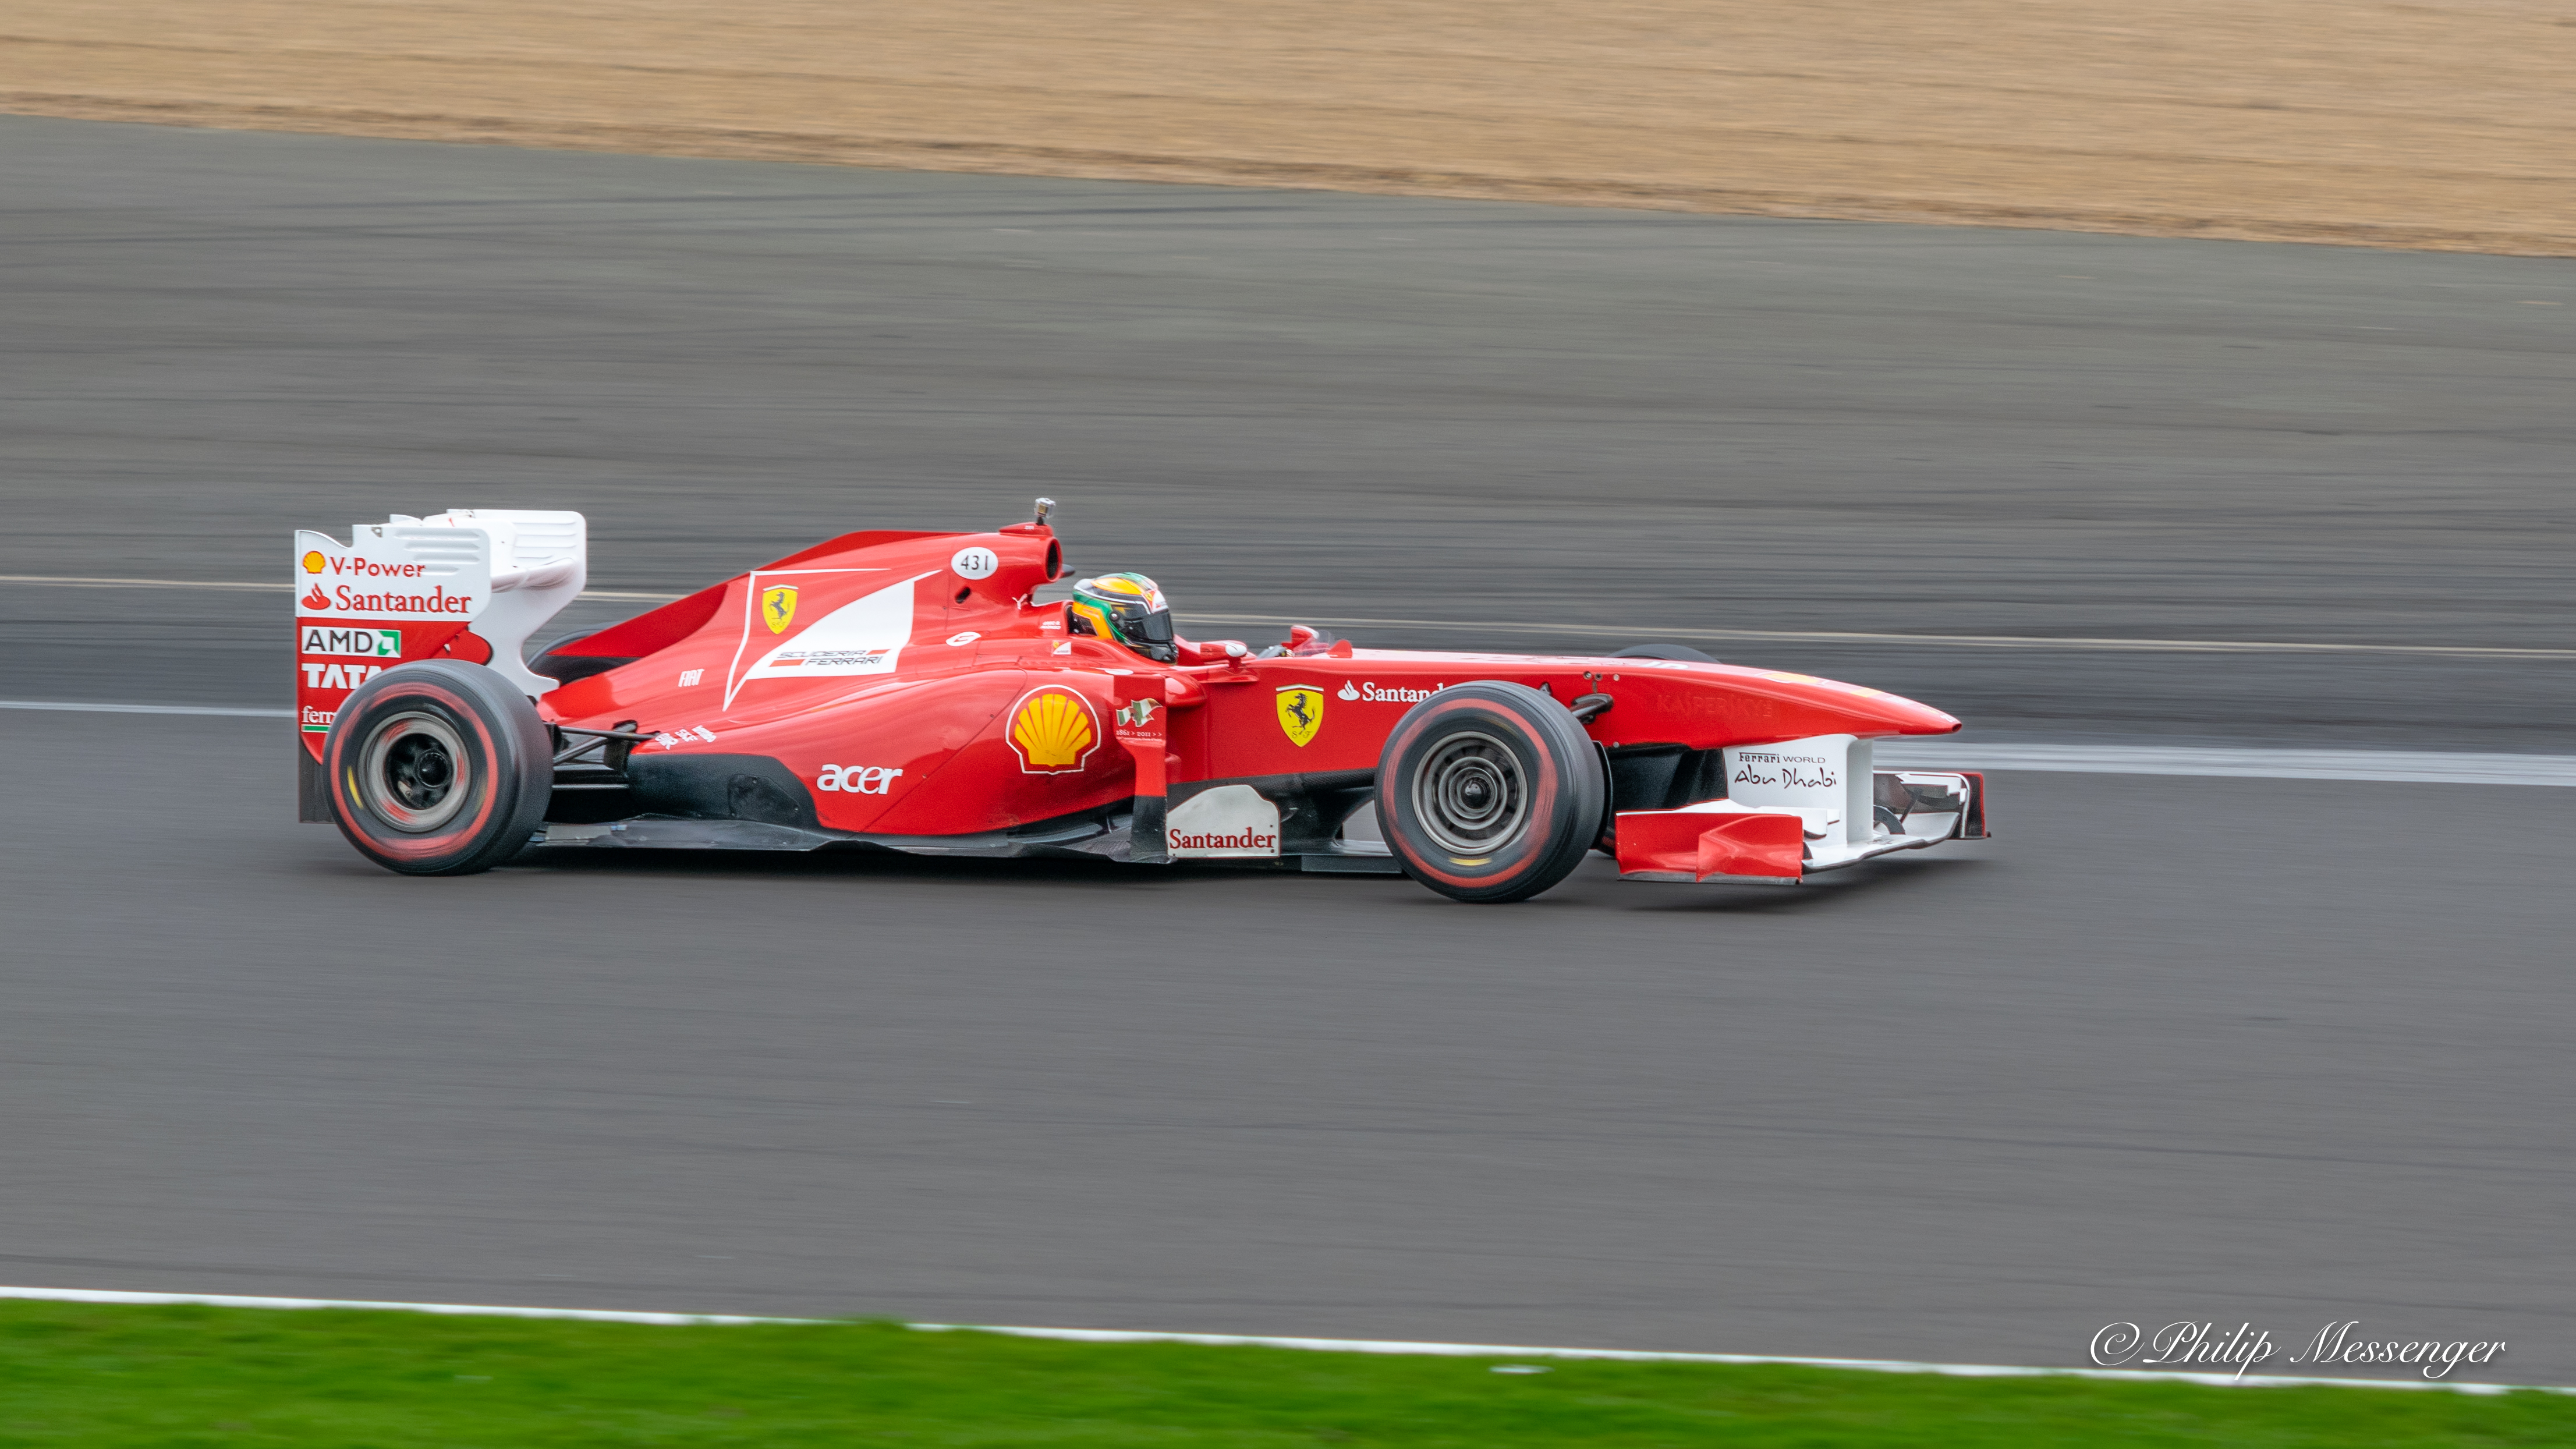 2011 Ferrari F150 Formula one car flying laps at Silverstone 